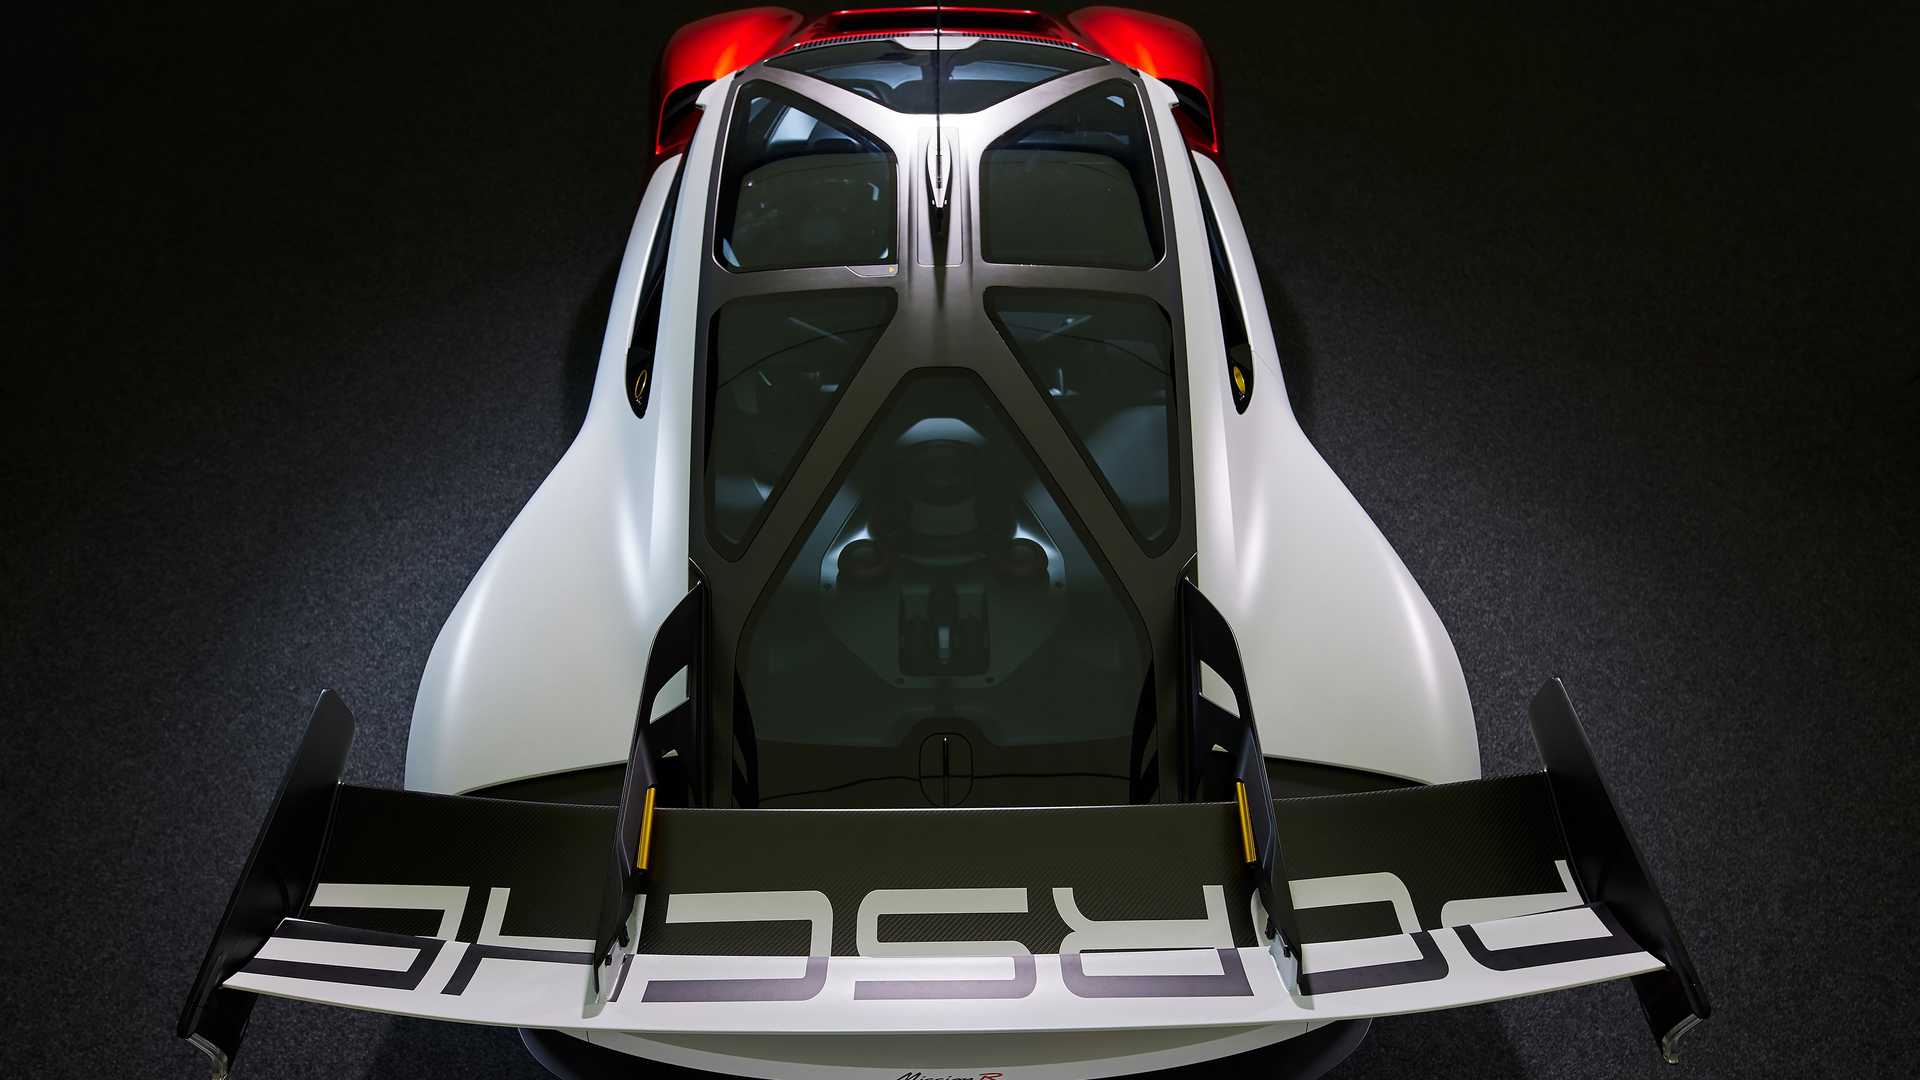 نمای بالا خودروی الکتریکی مفهومی پورشه میشن آر / Porsche Mission R Concept EV